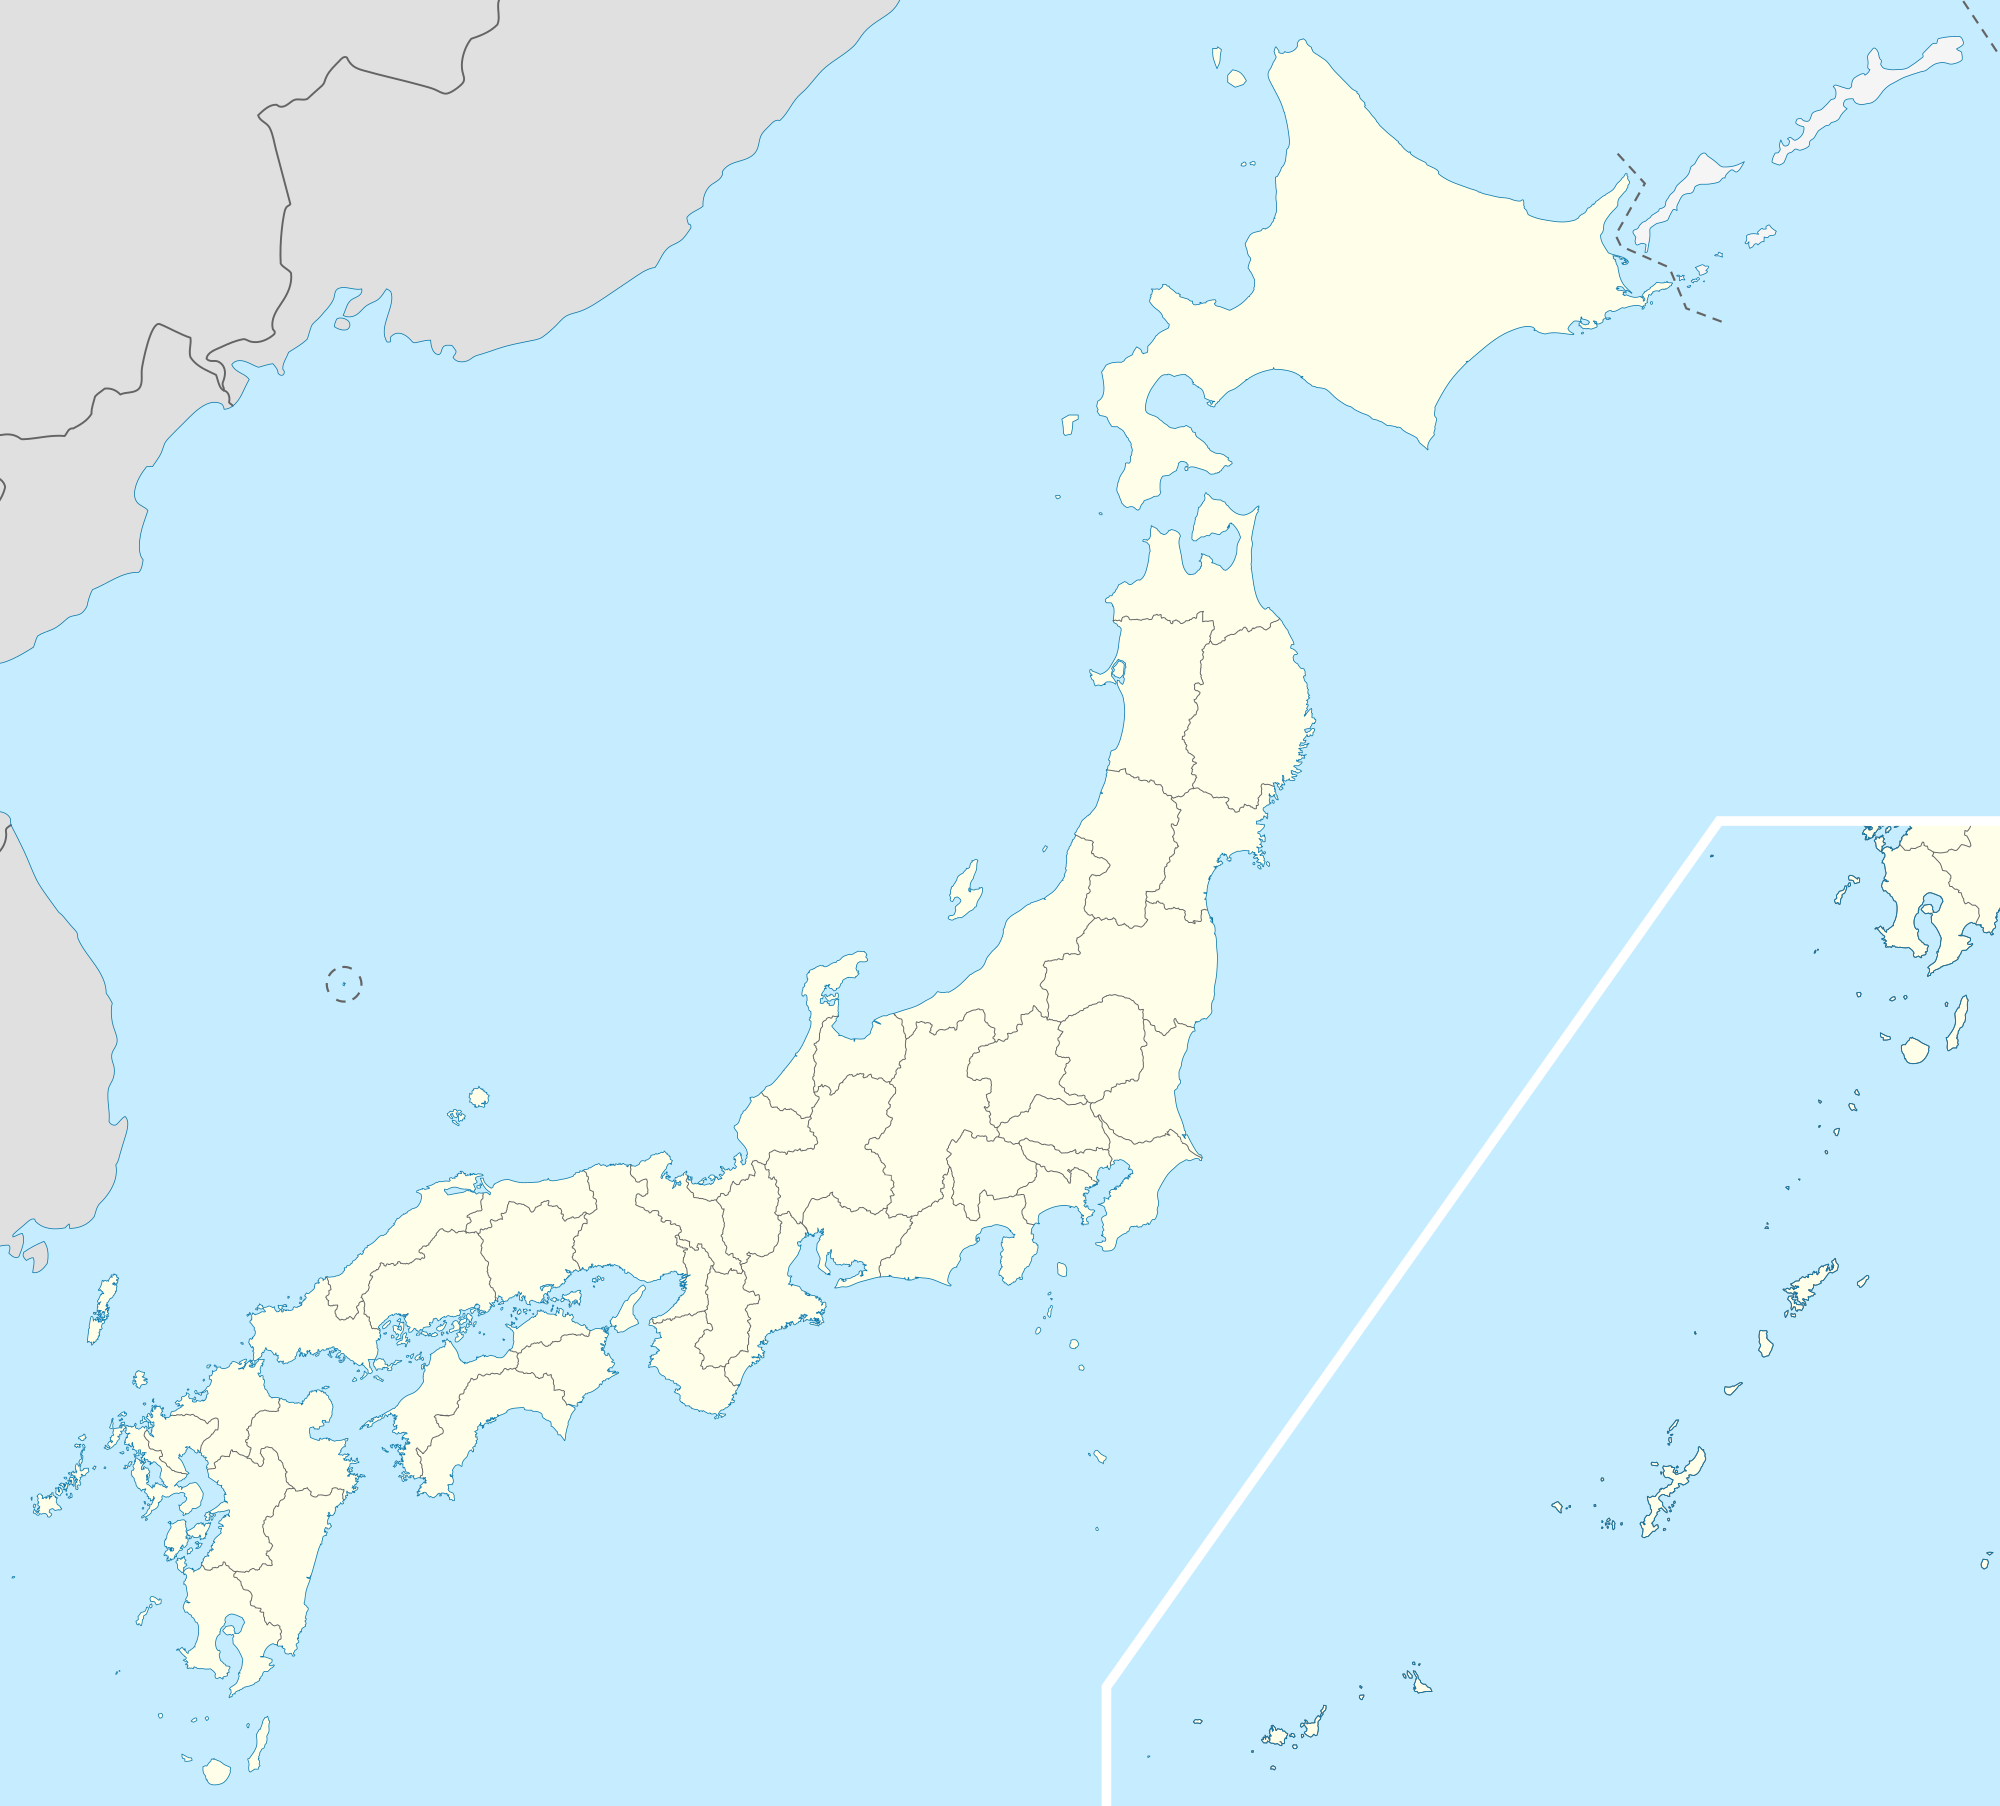 京都 is located in Japan